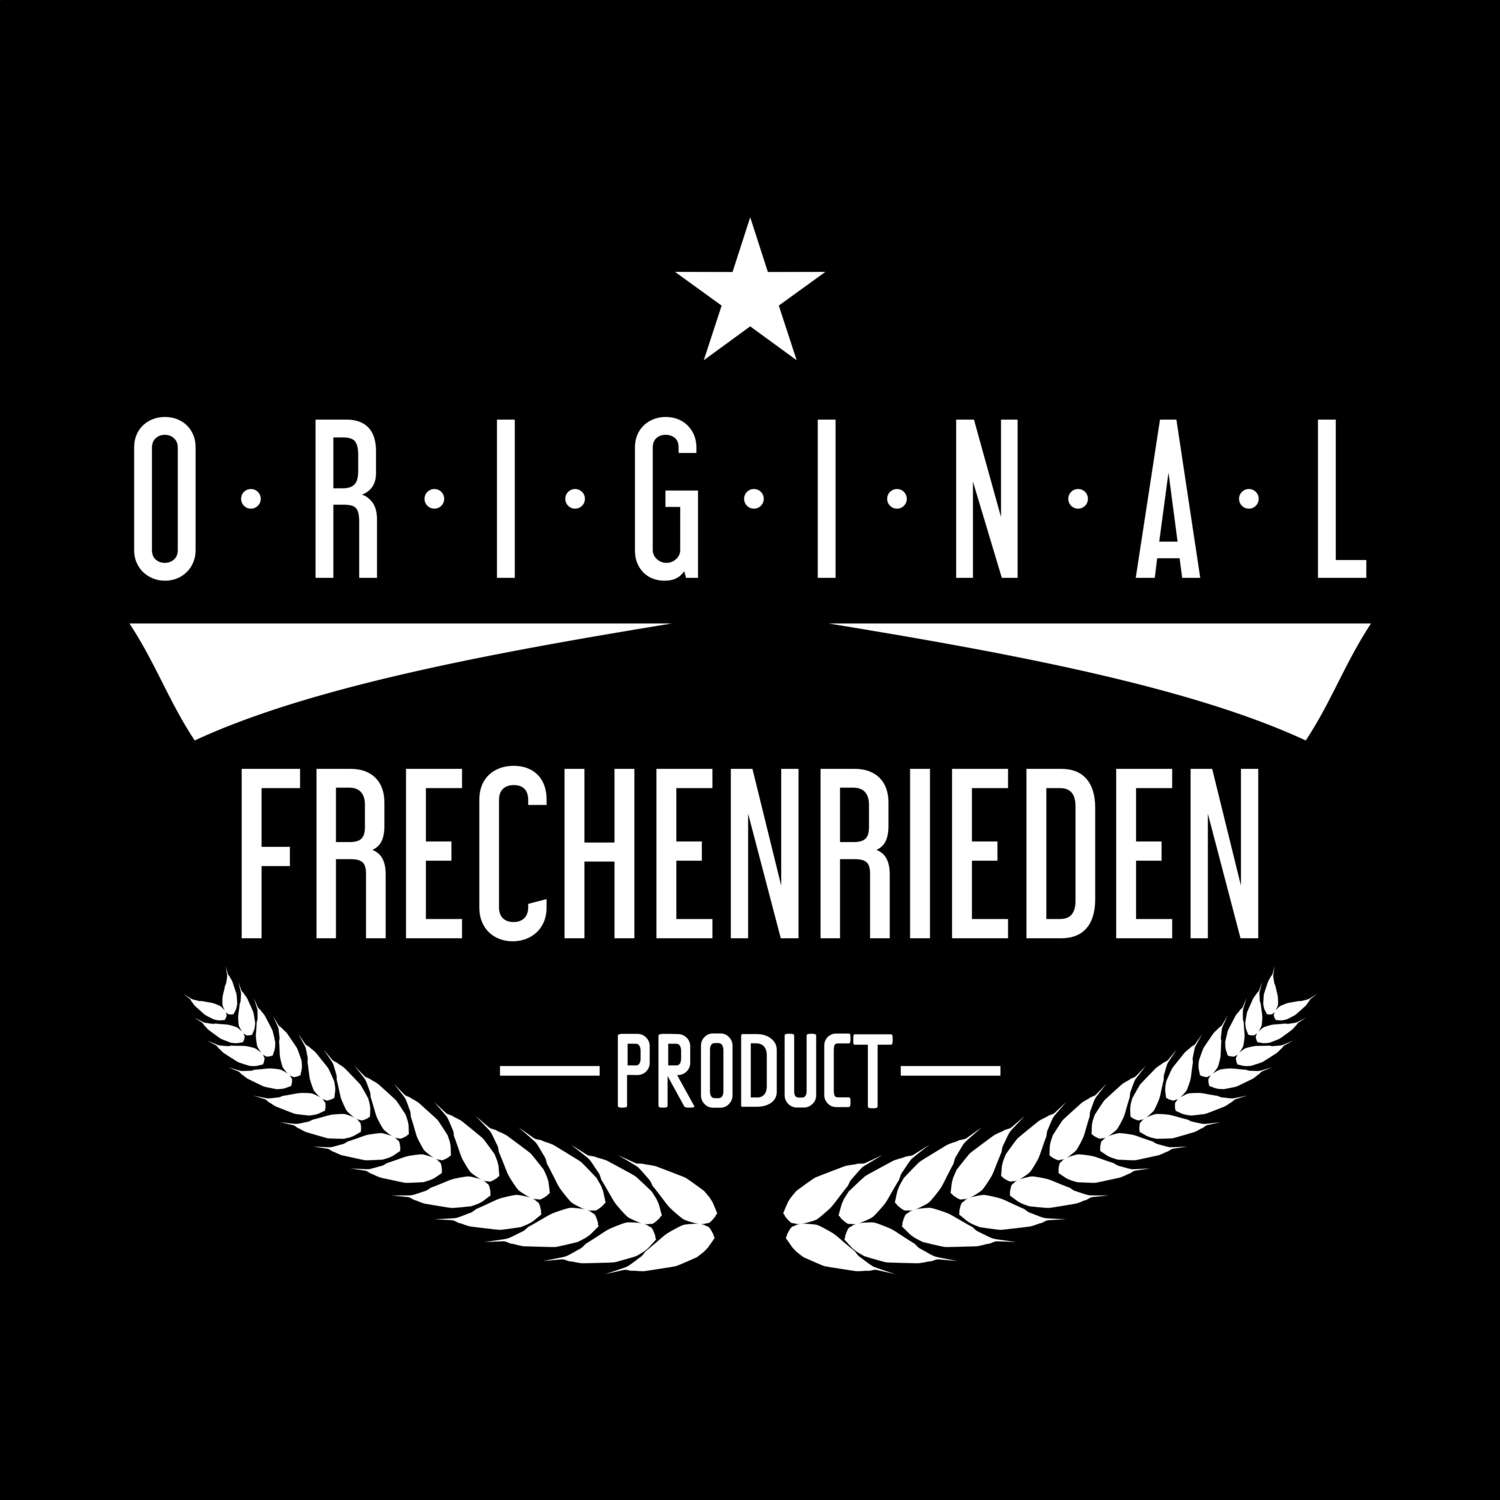 Frechenrieden T-Shirt »Original Product«